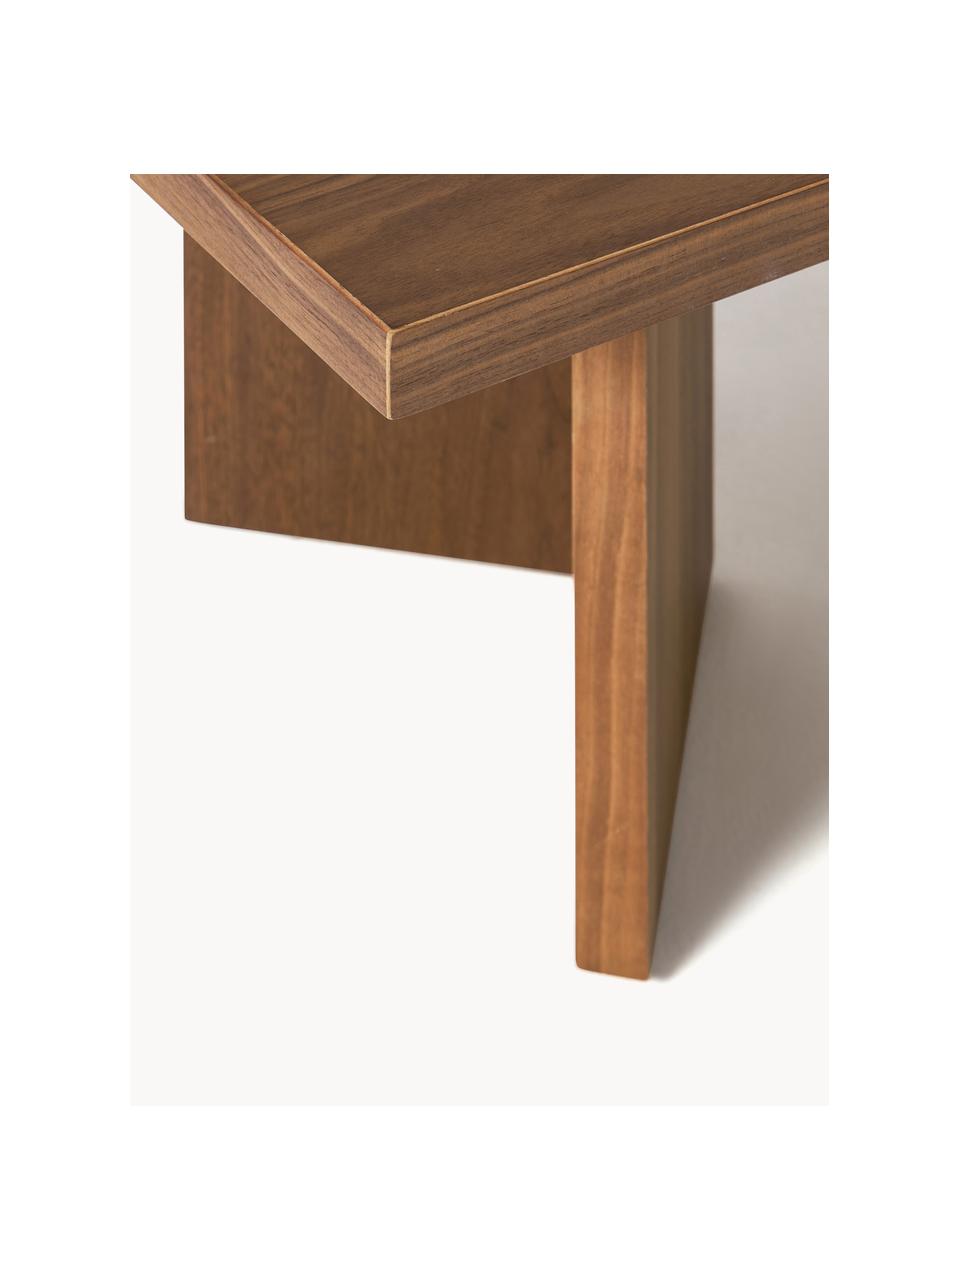 Drevený konferenčný stolík Toni, MDF-doska strednej hustoty s dyhou z orechového dreva, lakované

Tento produkt je vyrobený z trvalo udržateľného dreva s certifikátom FSC®., Dubové drevo, tmavohnedá lakovaná, Š 100 x D 55 cm